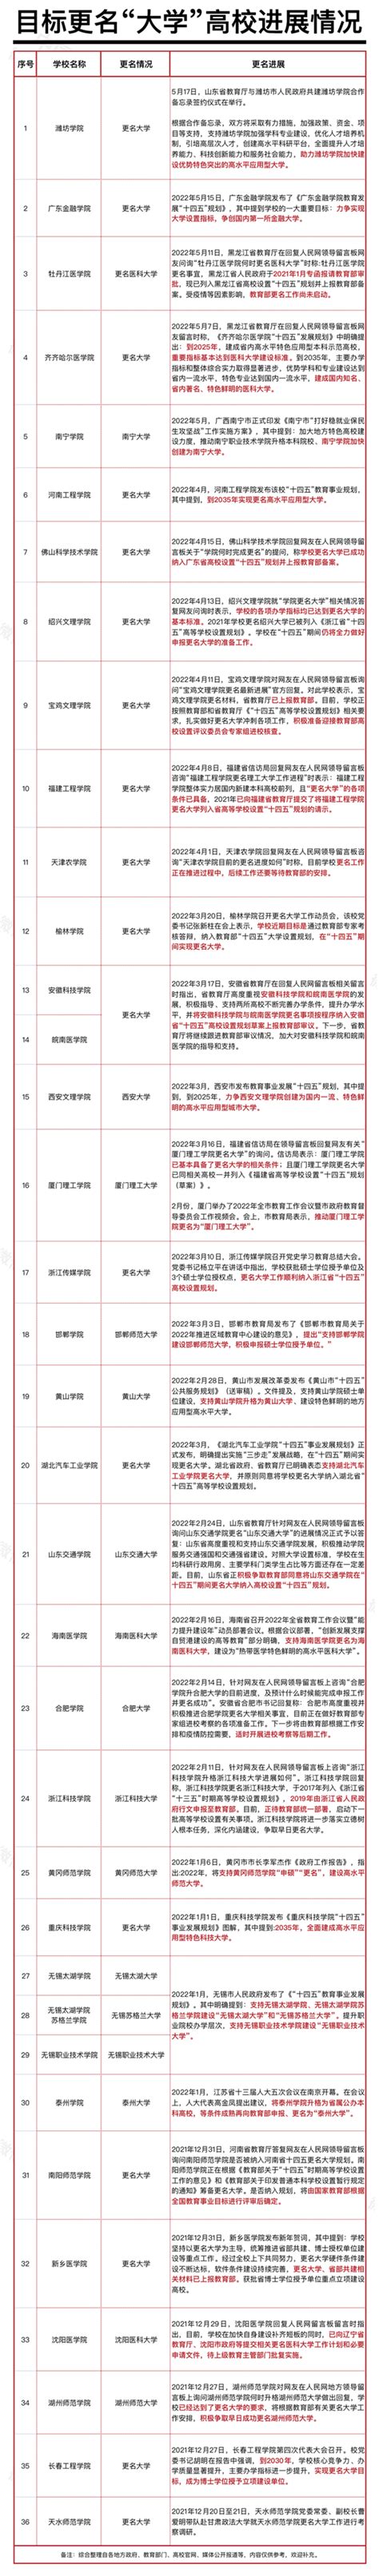 南京审计学院更名南京审计大学获教育部批准